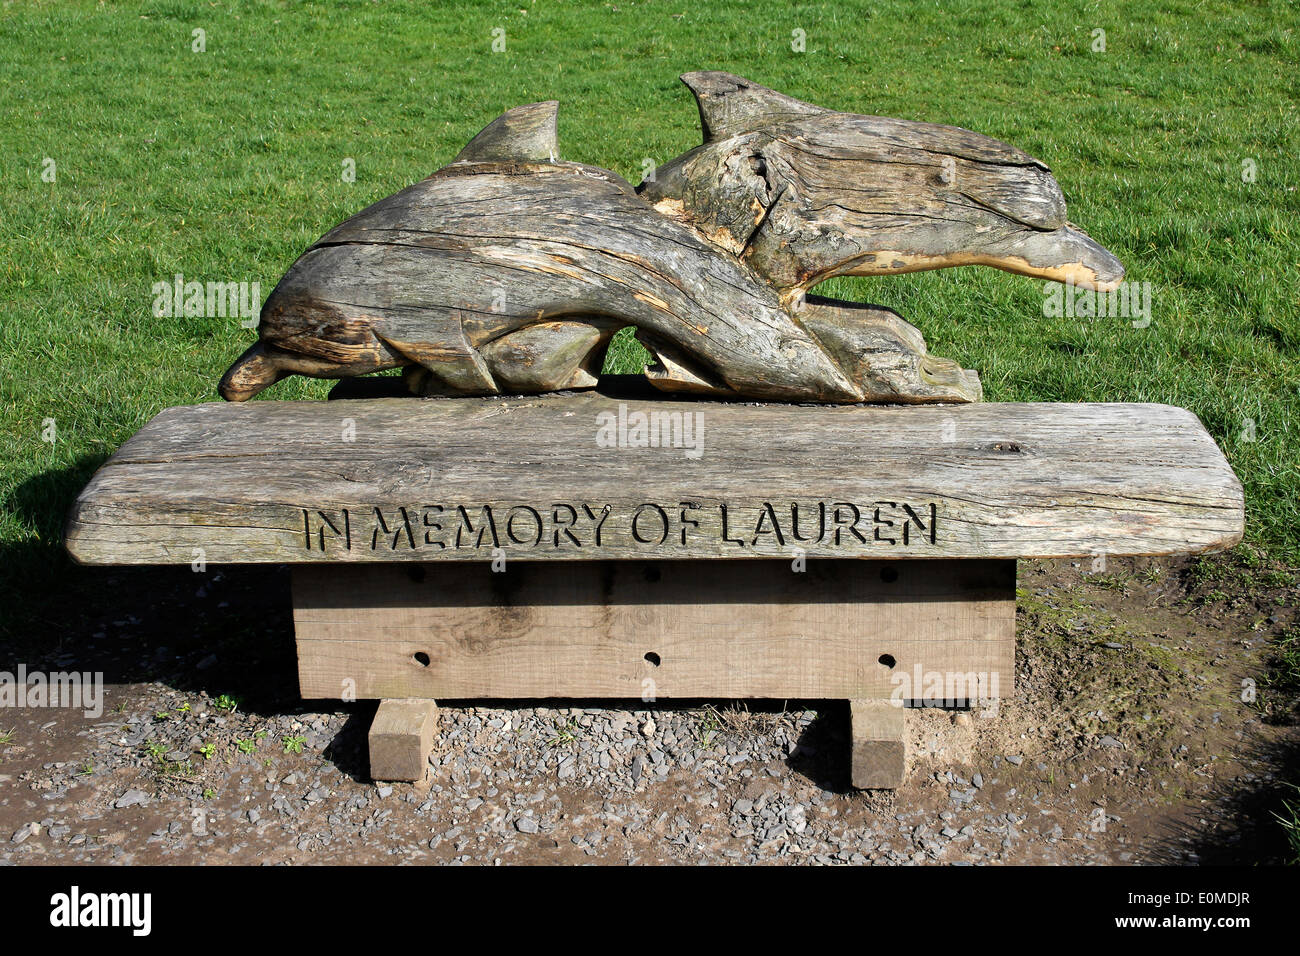 Dolphin Memorial Wooden Bench 'In Memory Of Lauren' Stock Photo